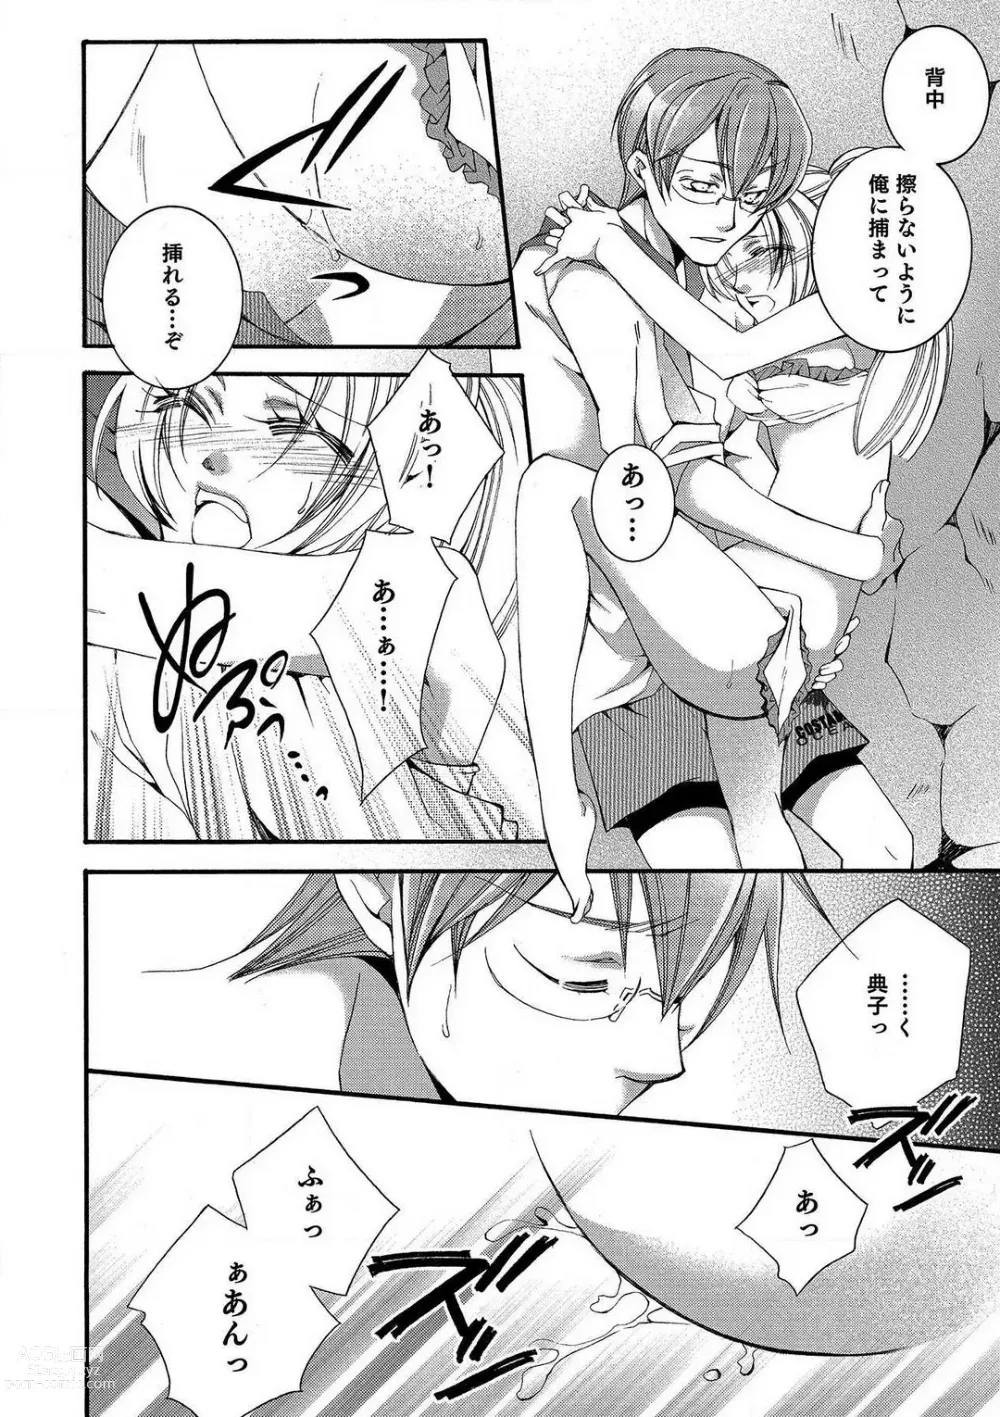 Page 70 of manga LOVE×PLAY 1-4